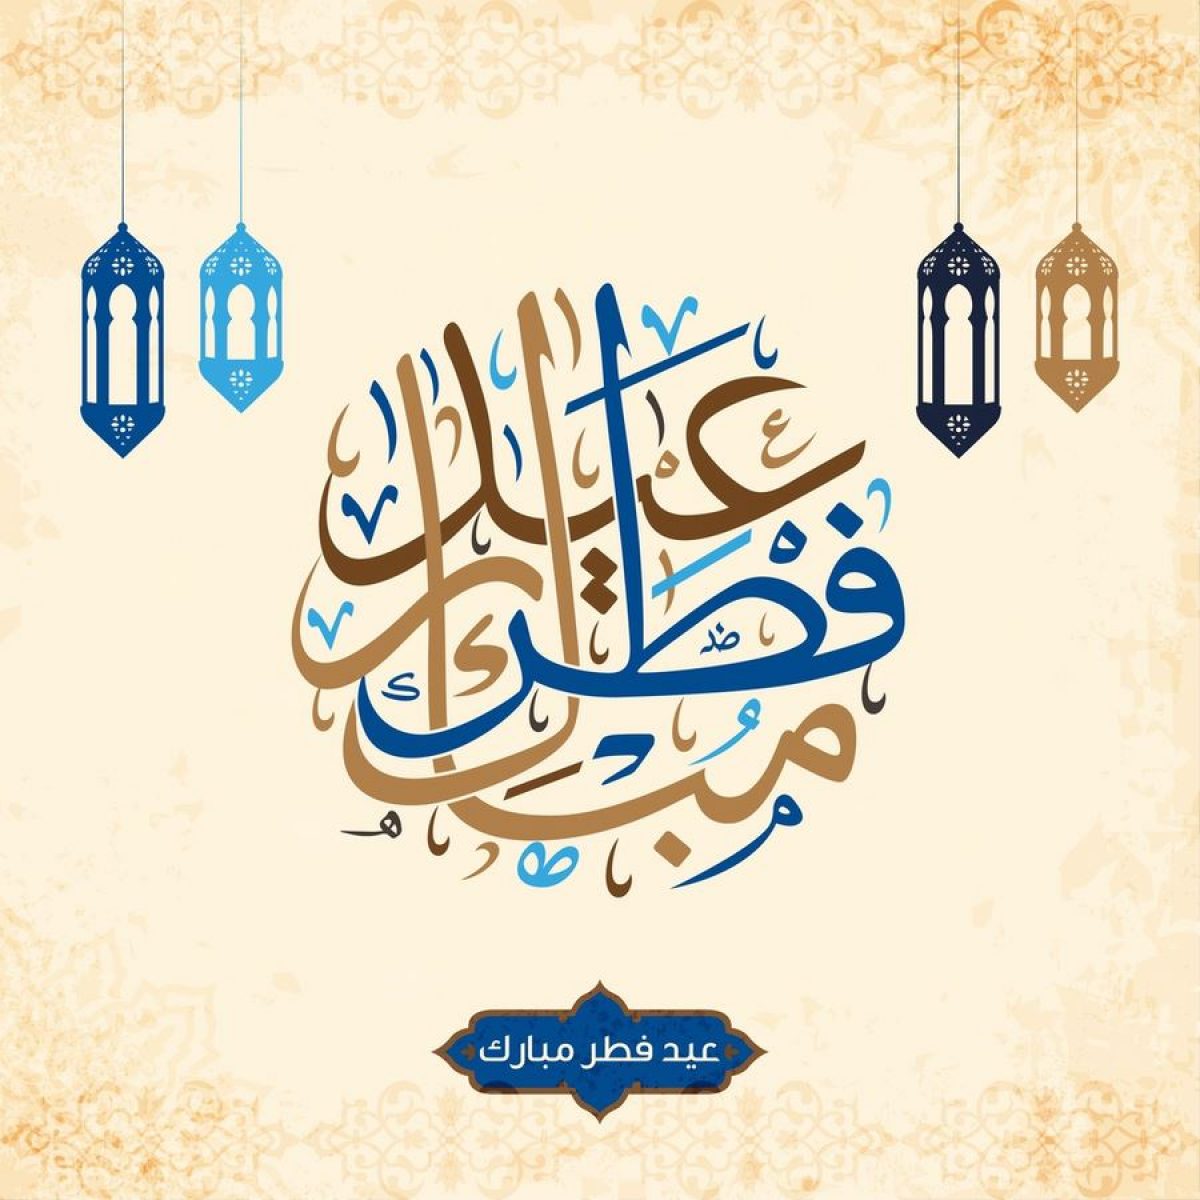 أجمل صور تهنئة عيد الفطر 2021 “Eid al-Fitr photos” رسائل العيد الصغير كتابة